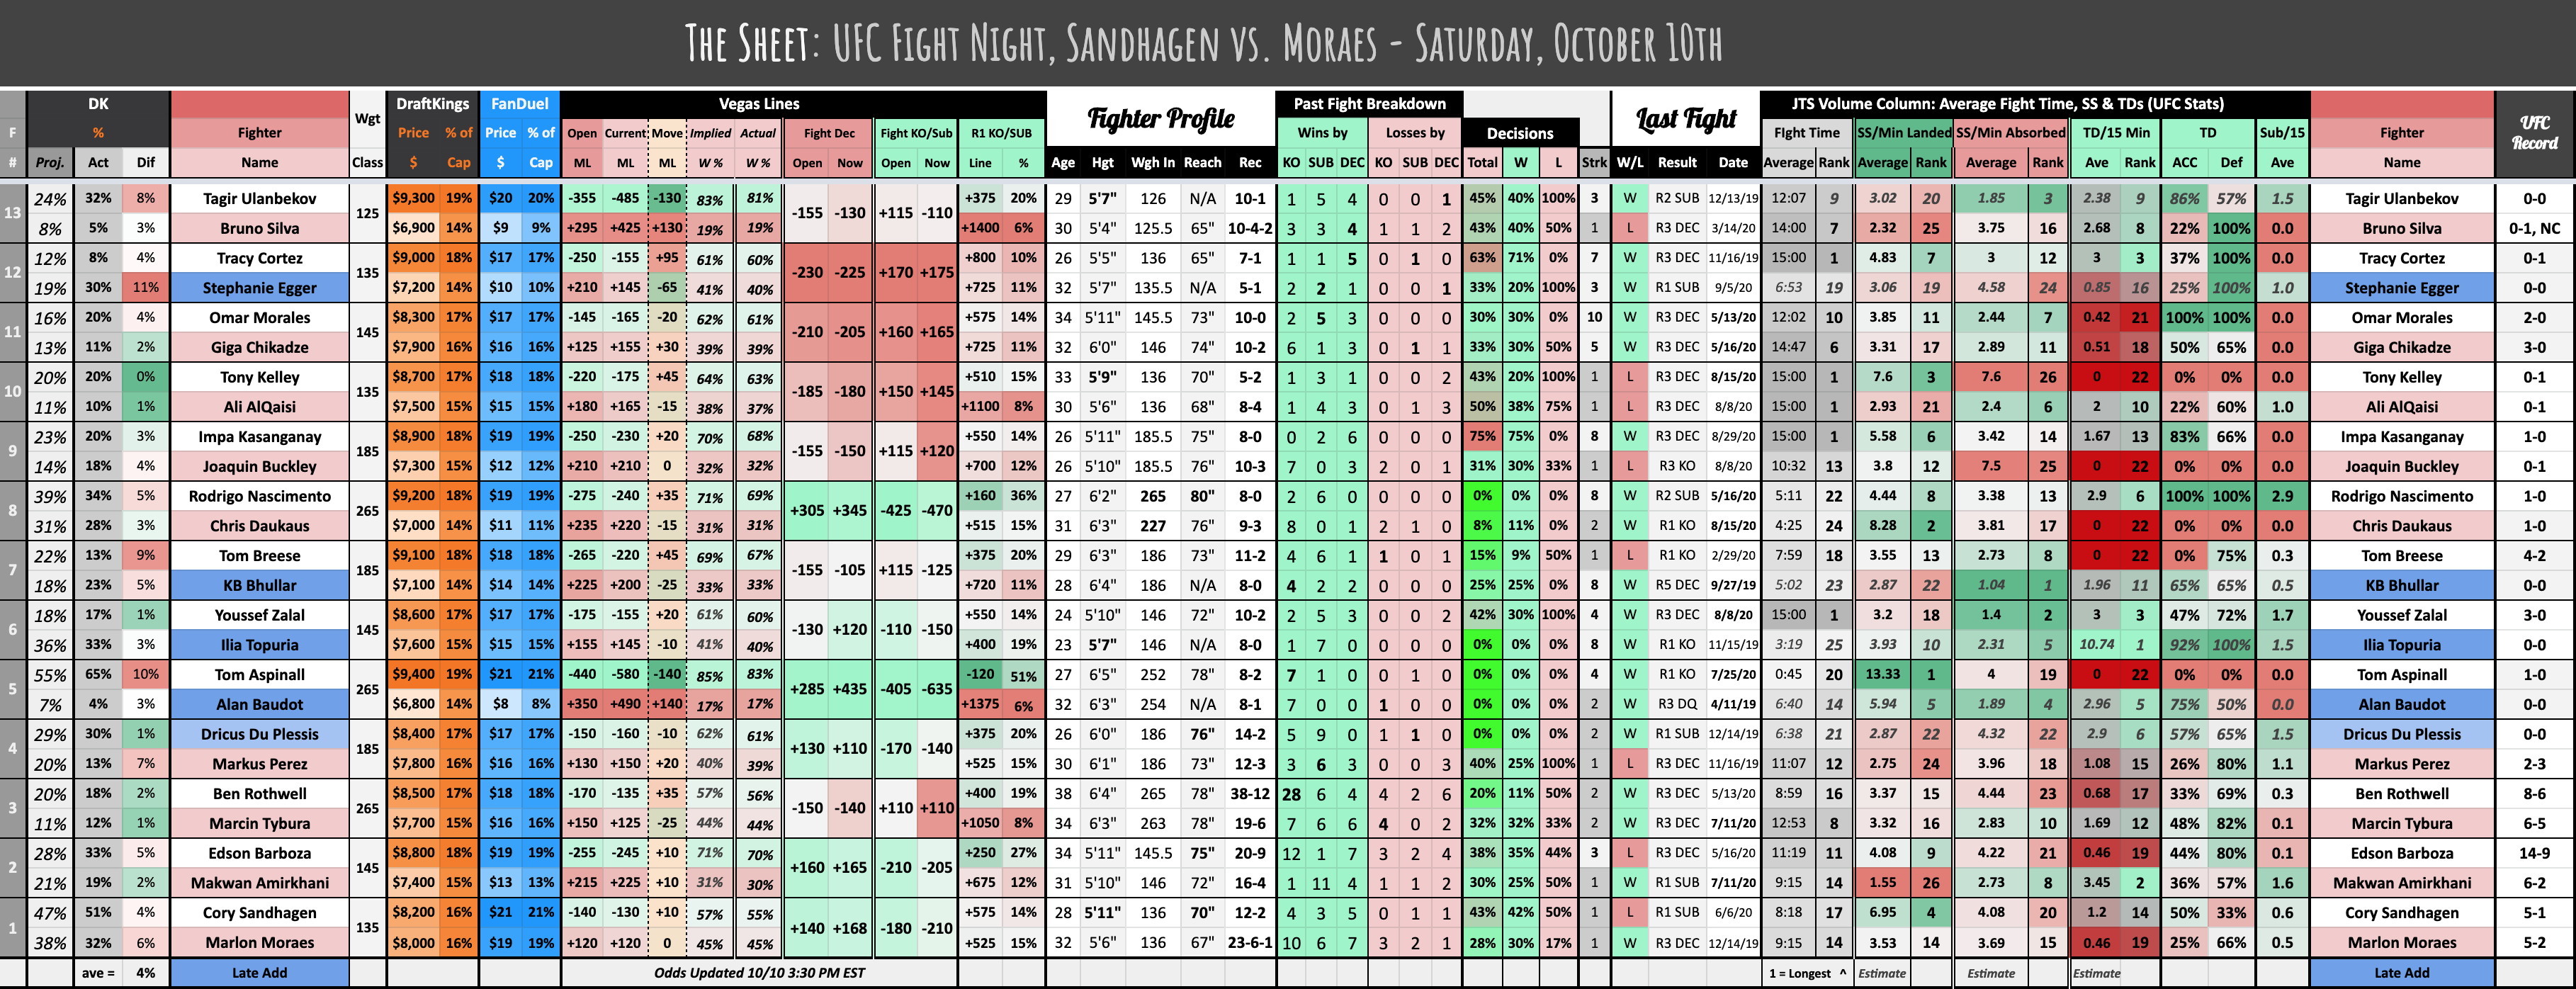 The Sheet: UFC Fight Night, Sandhagen vs. Moraes - Saturday, October 10th